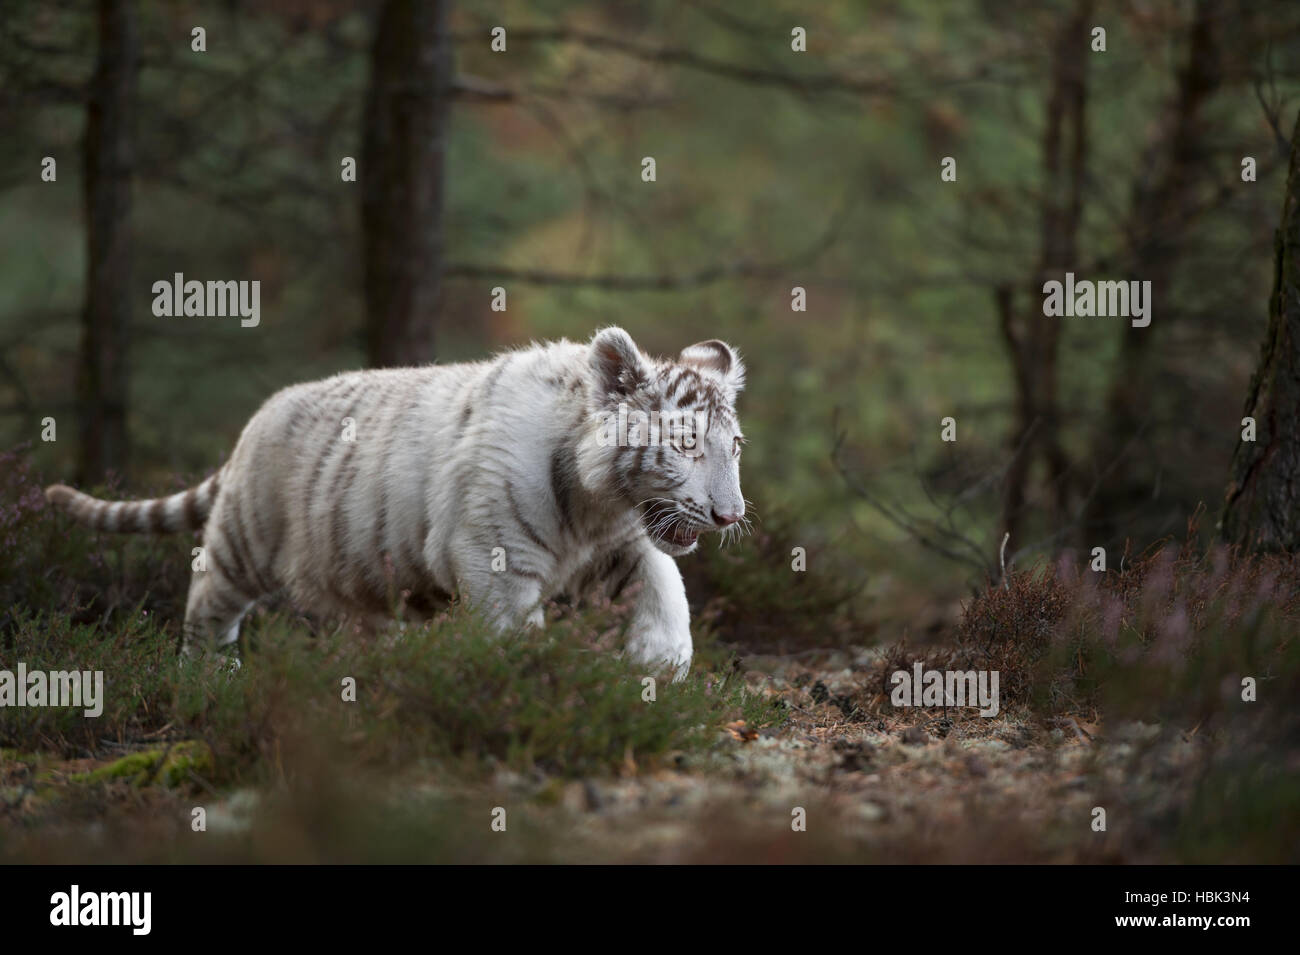 Royal tigre del Bengala / Koenigstiger ( Panthera tigris ), bianco morph, giovani, cute animale, intrufolarsi attraverso una foresta. Foto Stock